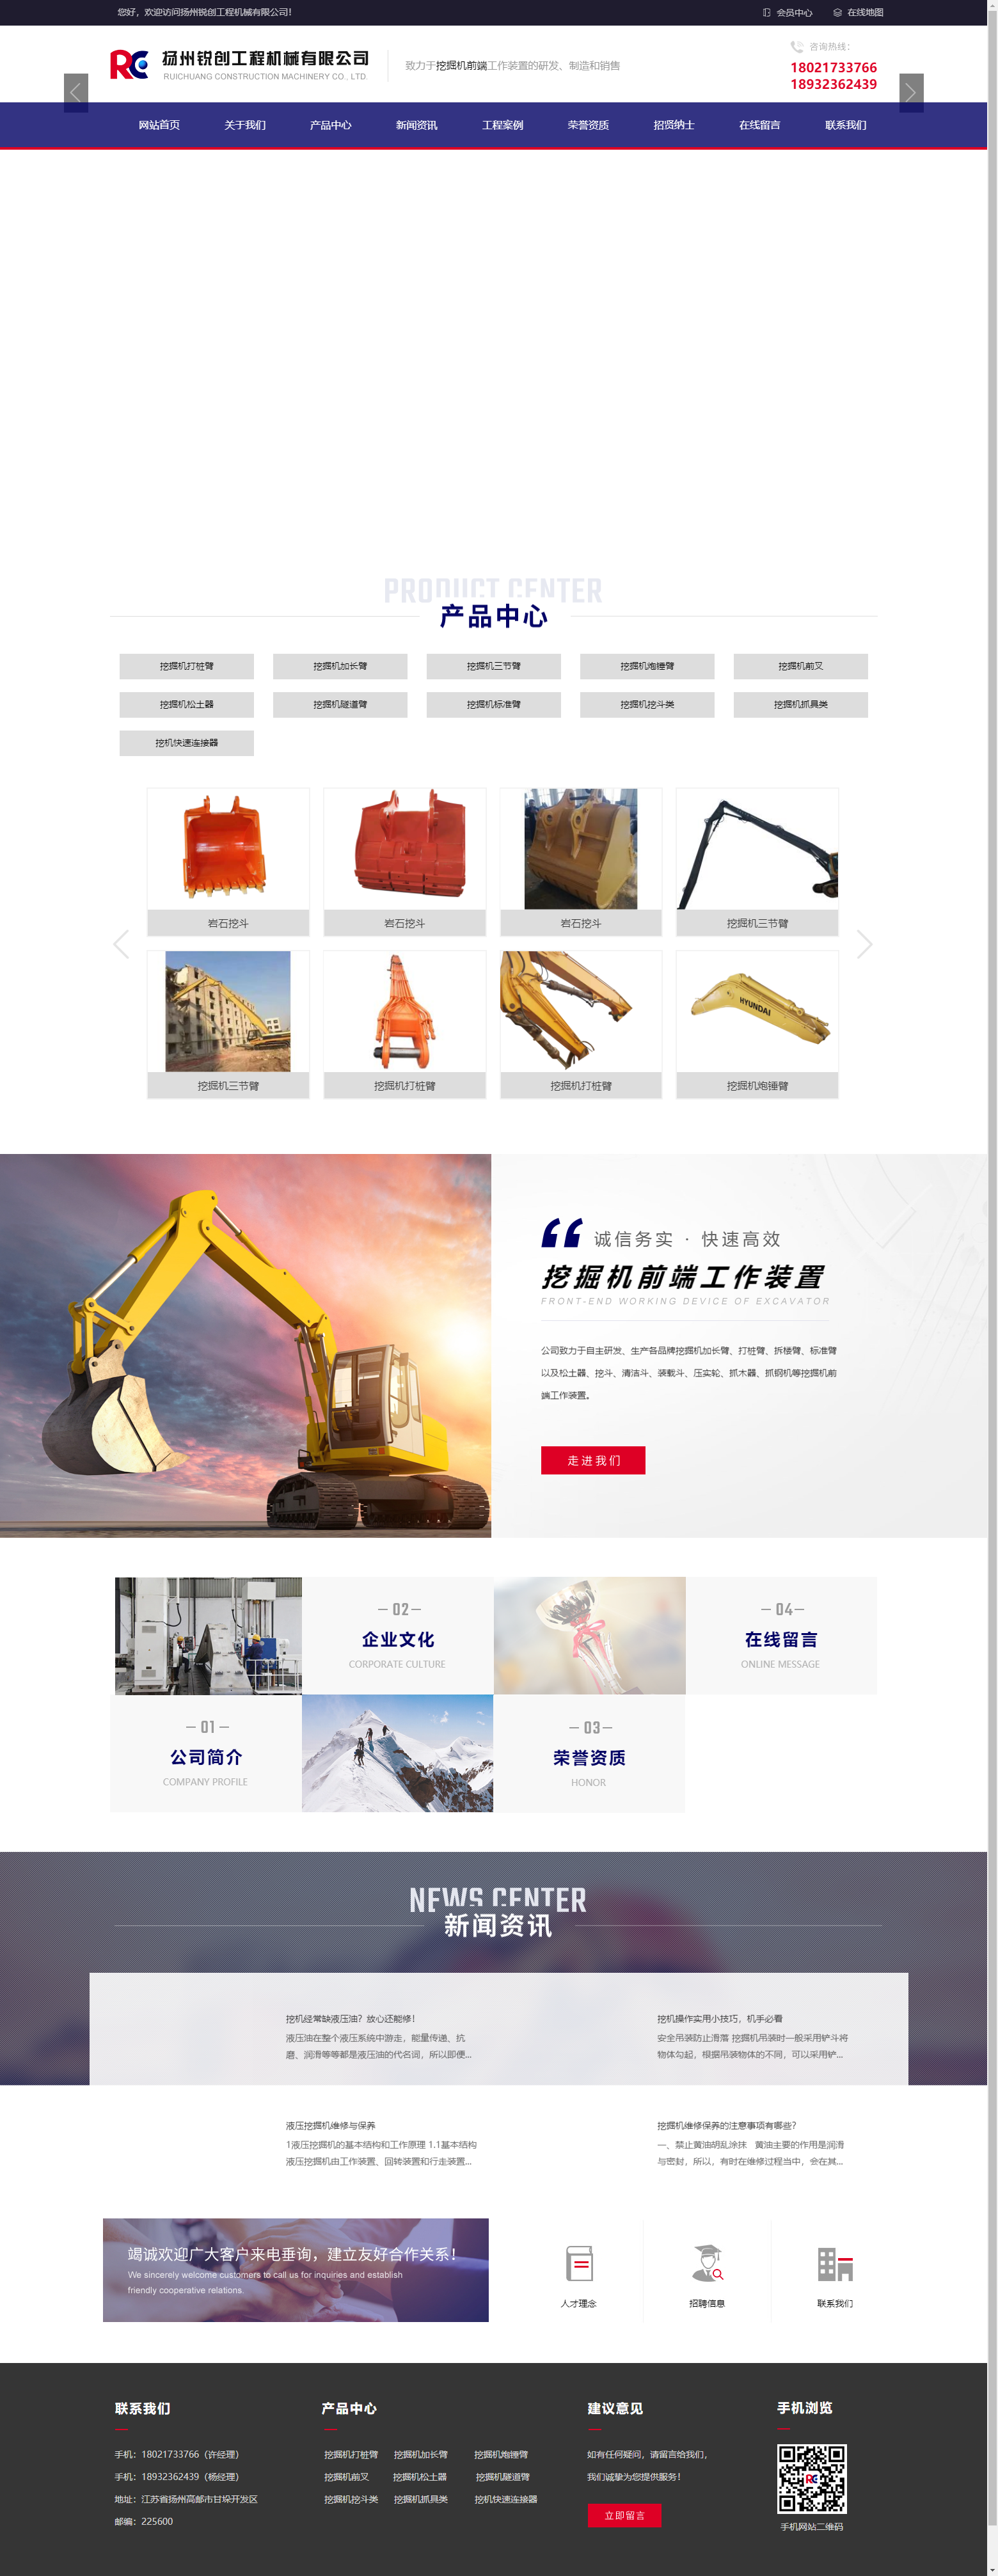 扬州锐创工程机械有限公司网站案例